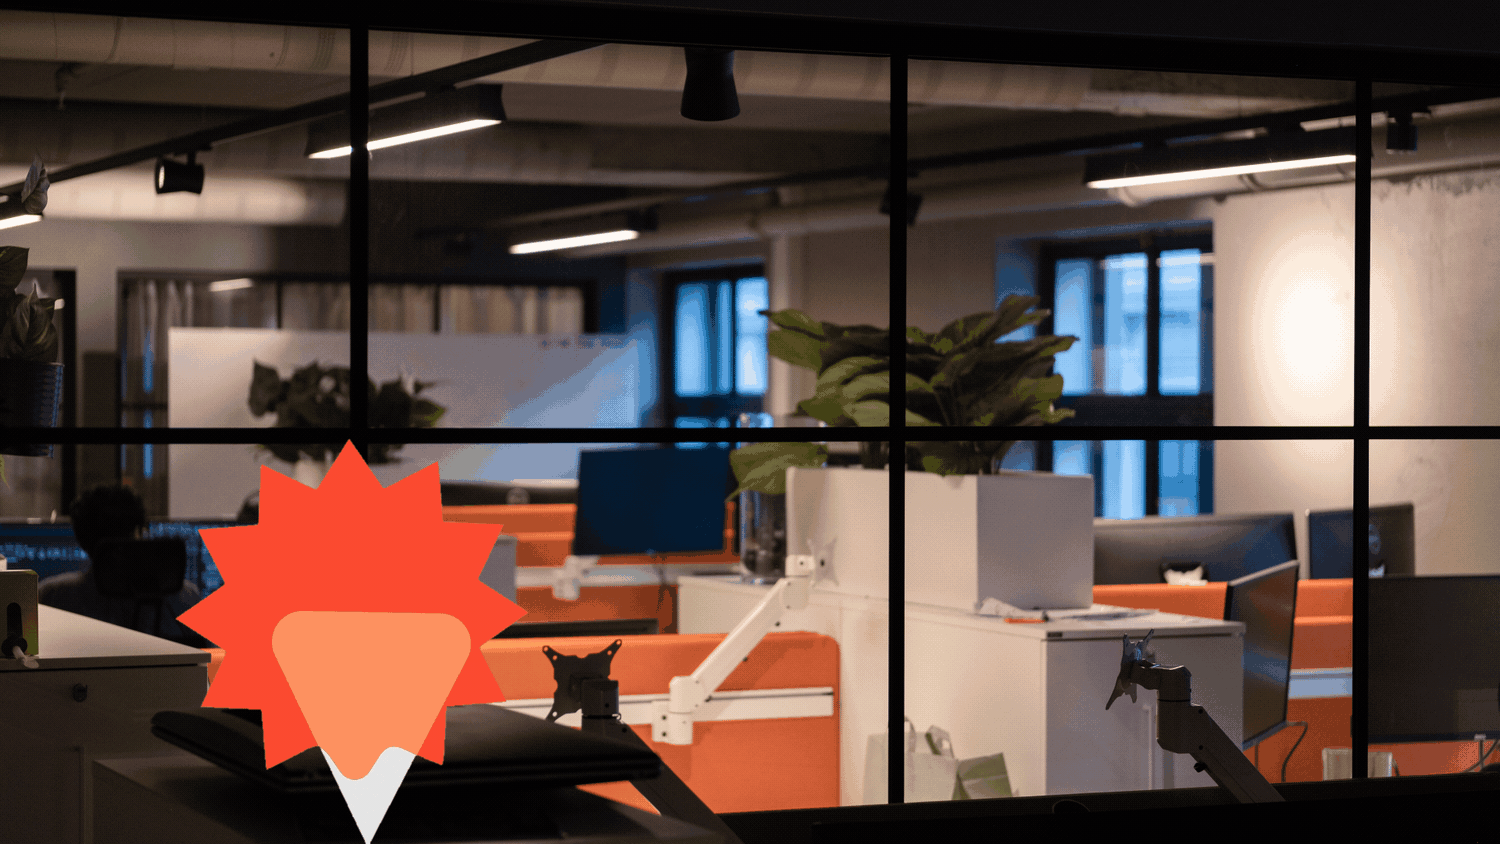 dRofus sine kontorlokaler, med grafiske former i hvit og rød som svever over skjermen